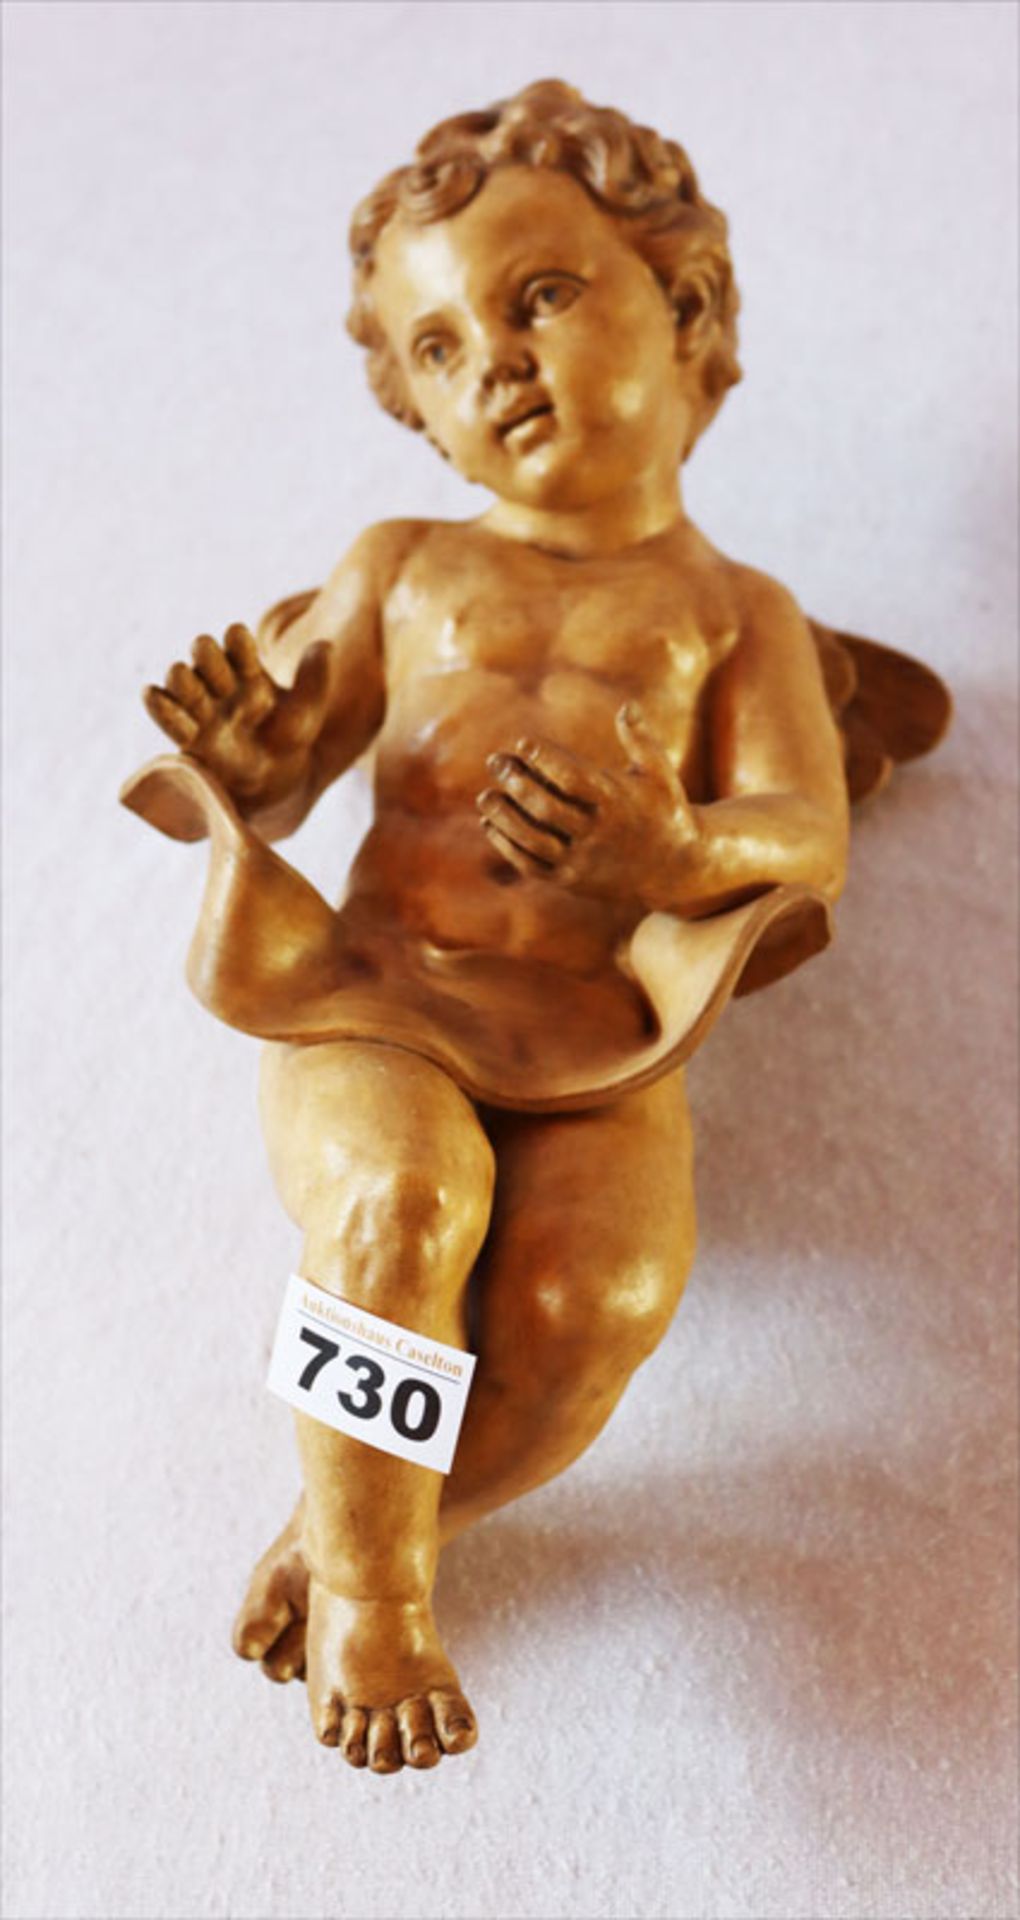 Keramik Figur 'Engel', braun bemalt, H 34 cm